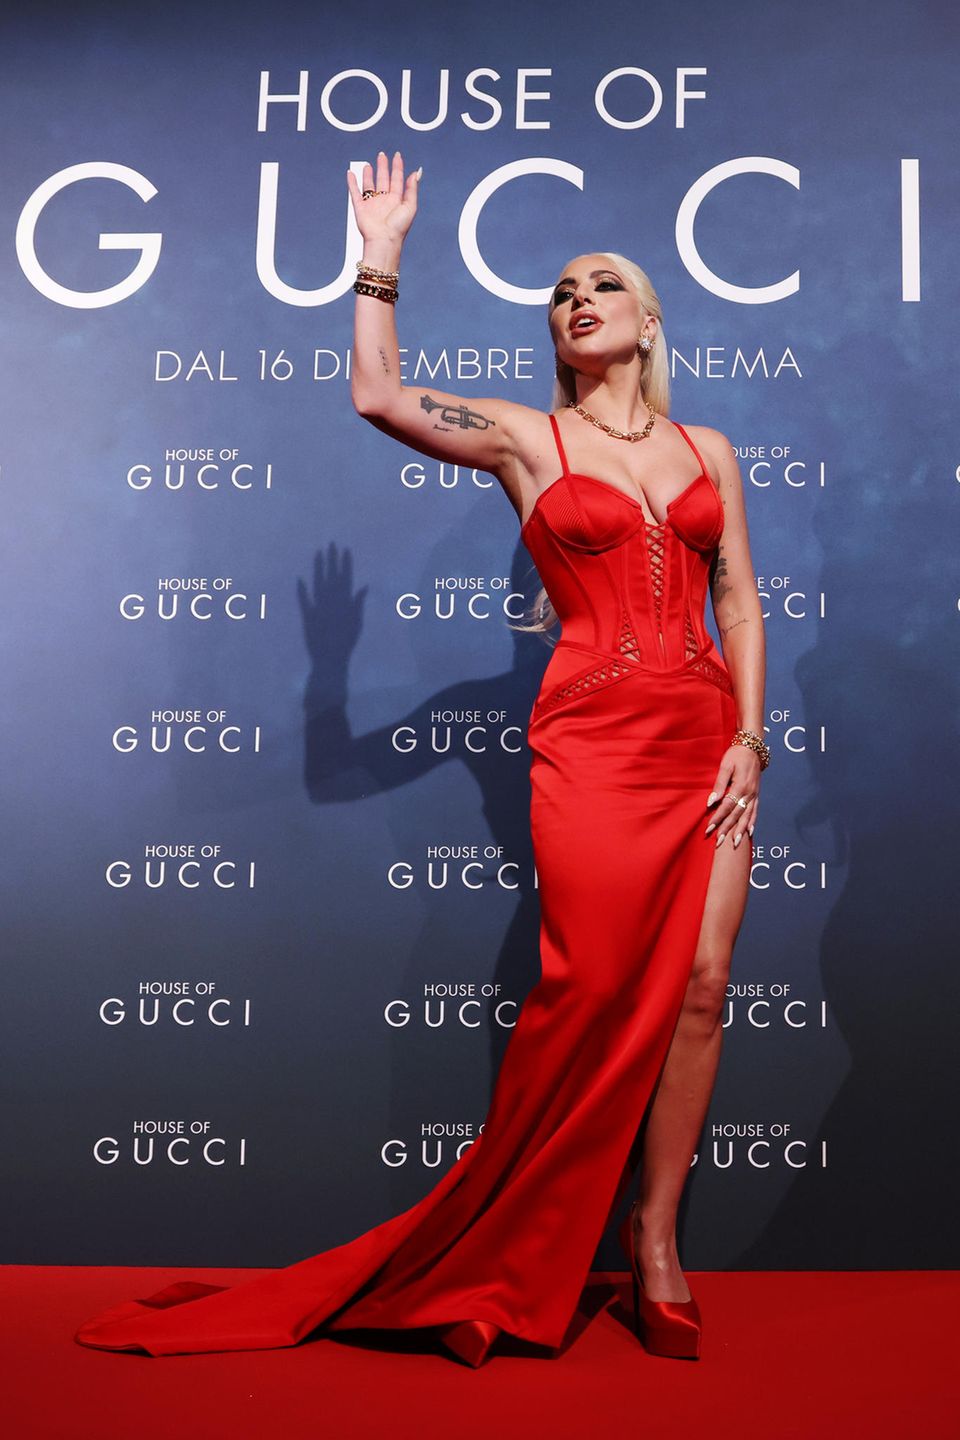 Auf dem Red Carpet der  "House Of Gucci" zeigt sich Lady Gaga mal wieder von ihrer besten Seite. Und das nicht etwa im Gucci-Dress, sondern im feuerrroten Schnür-Look von Versace samt der richtigen Diven-Attitüde, versteht sich.